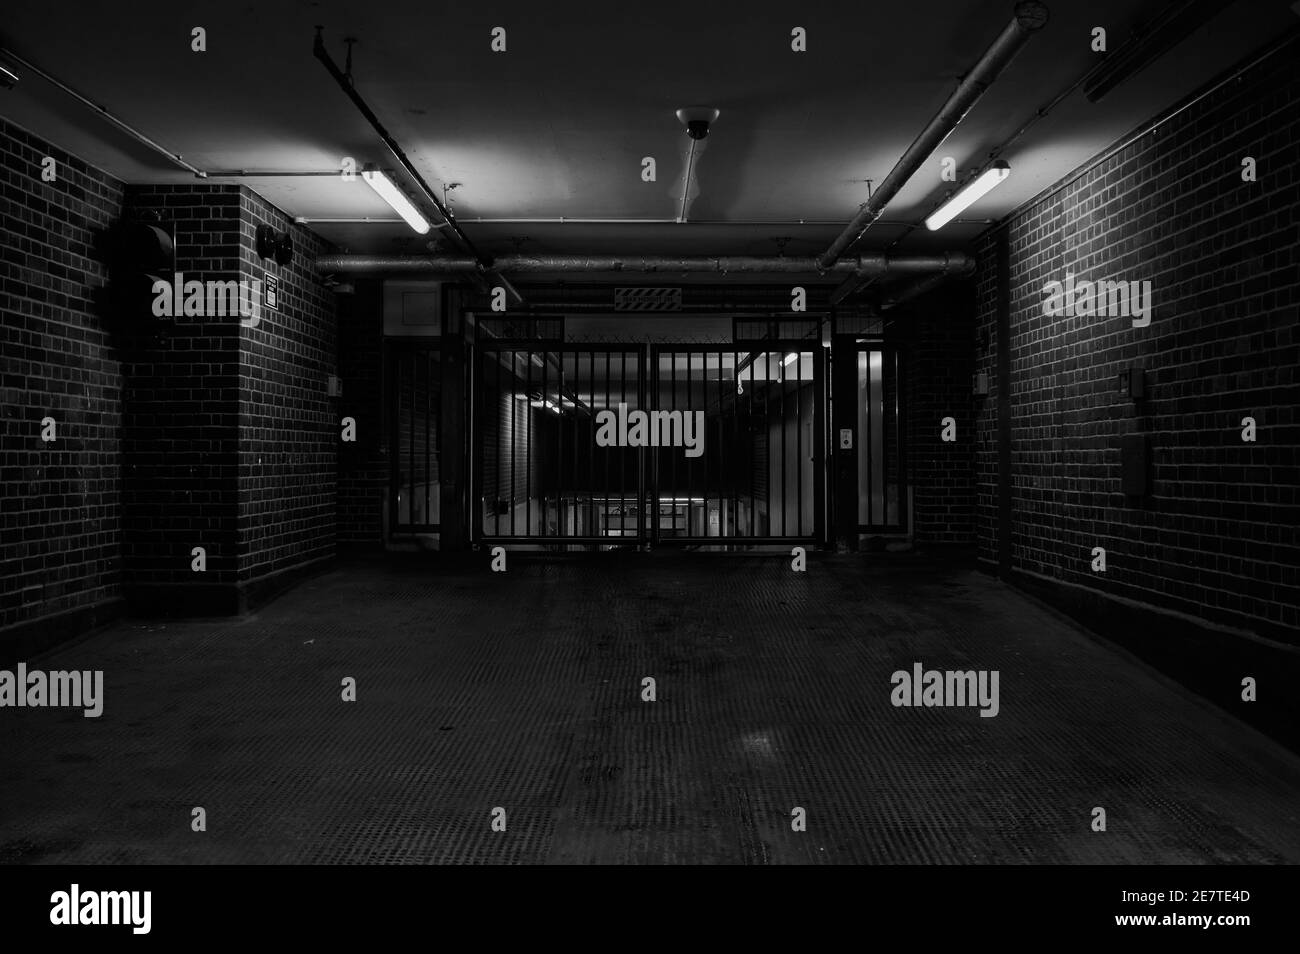 Londra, UK - 29 Jan 2021 : immagine in bianco e nero della porta di un garage di notte Foto Stock